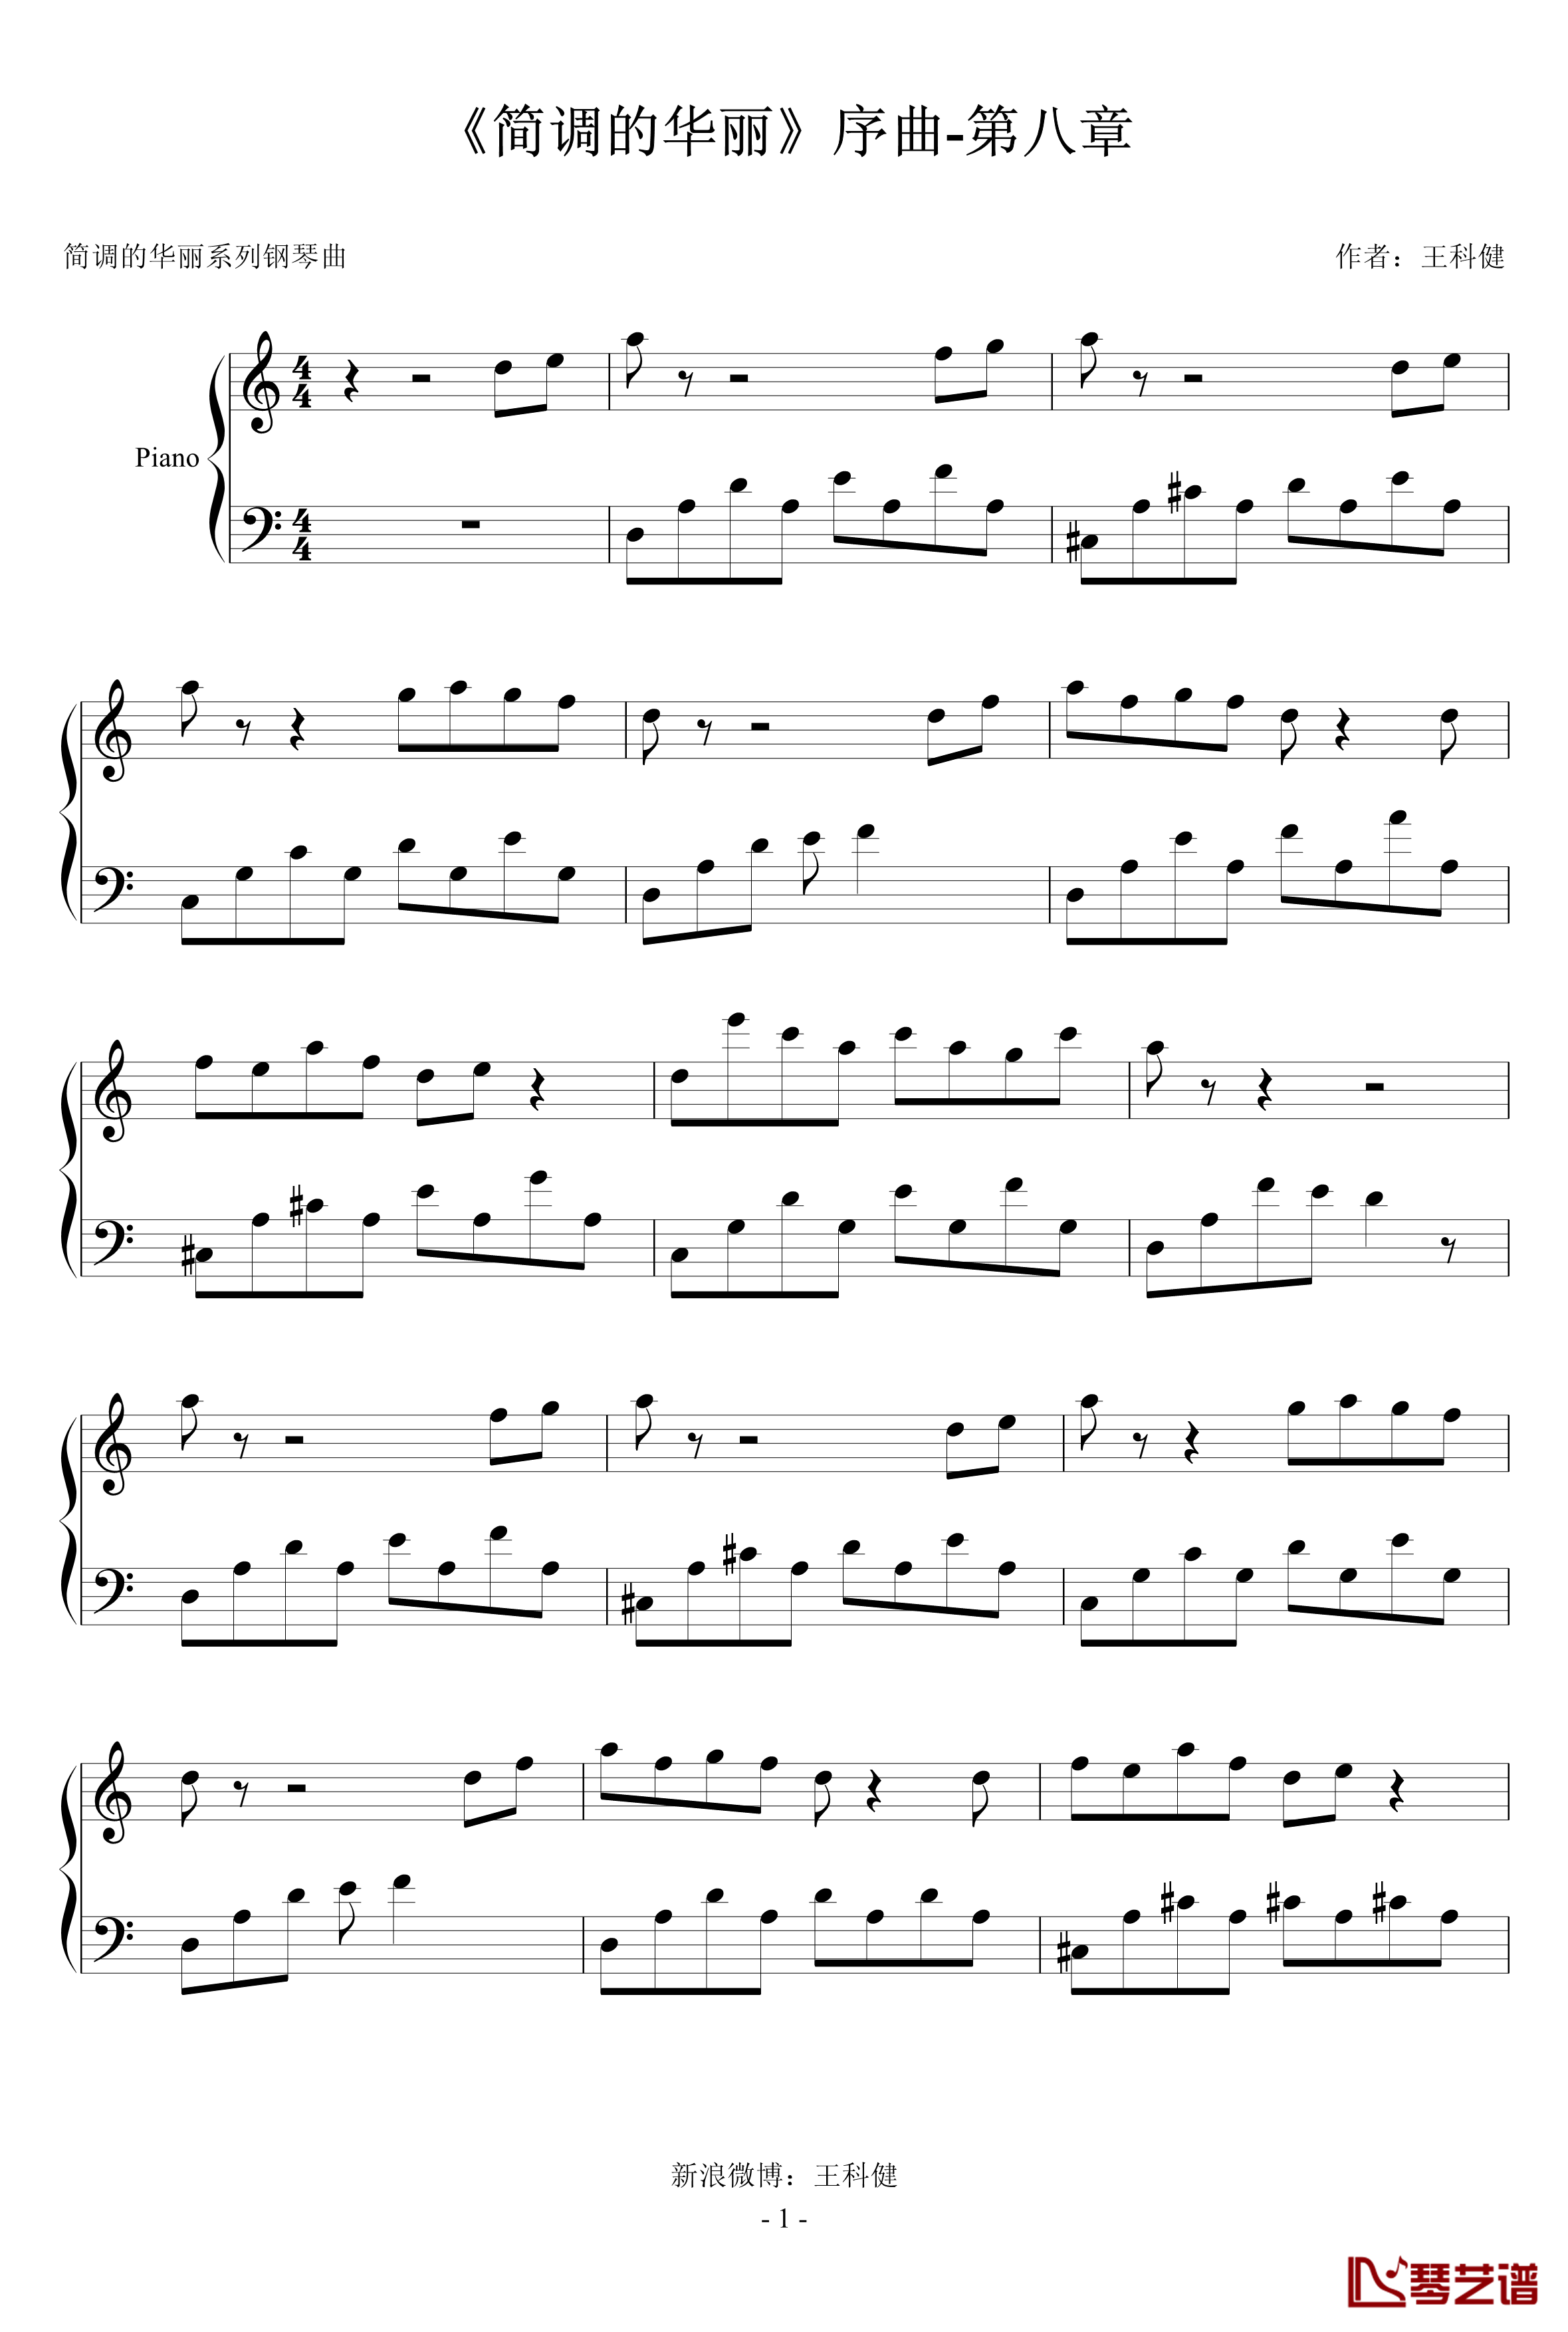 简调的华丽钢琴谱-第八章-王科健1